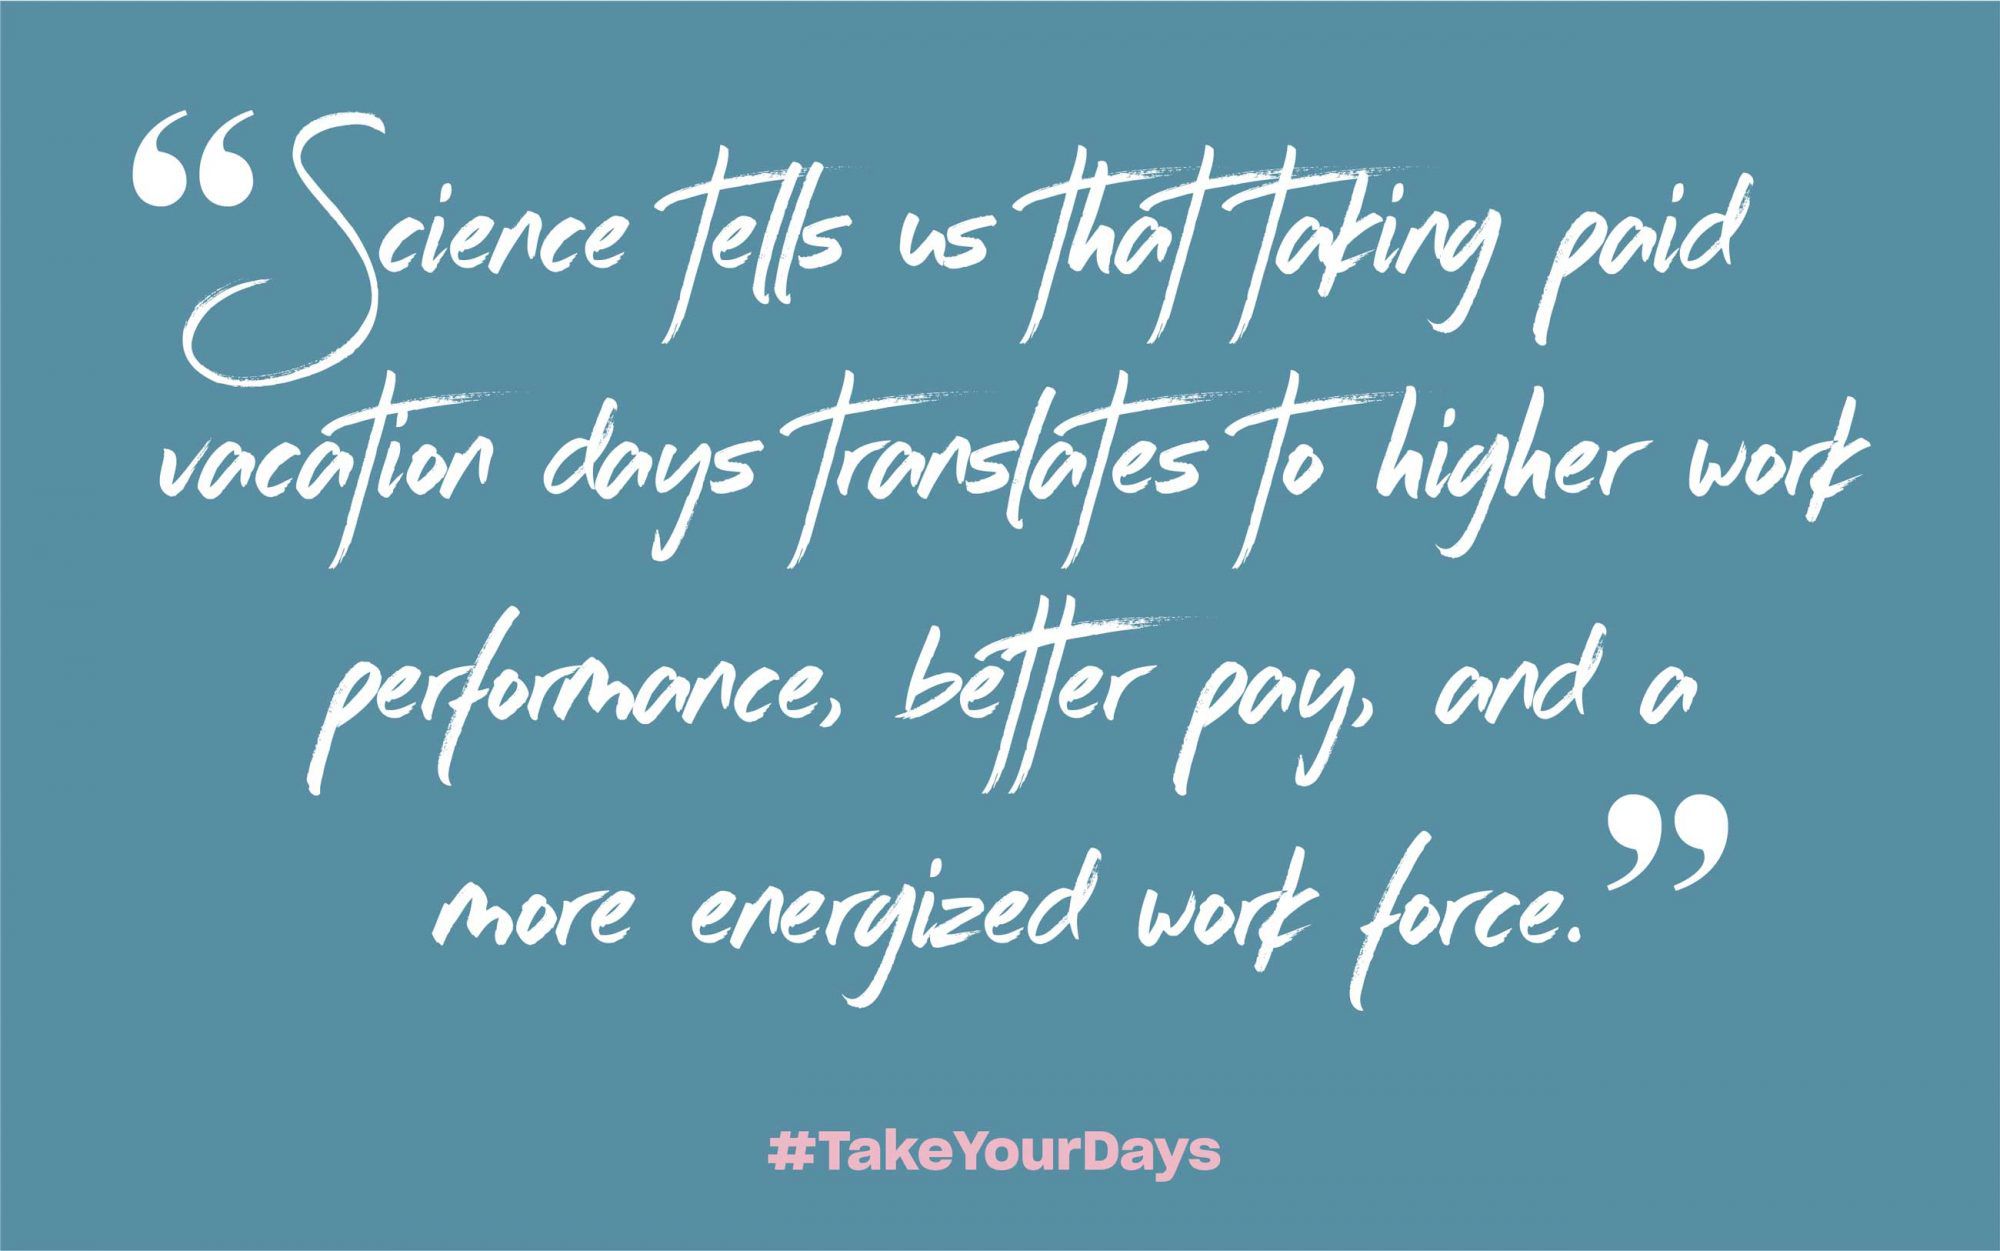 La science nous dit que prendre des jours de congés payés se traduit par une meilleure performance au travail, un meilleur salaire et une main-d'œuvre plus énergique.